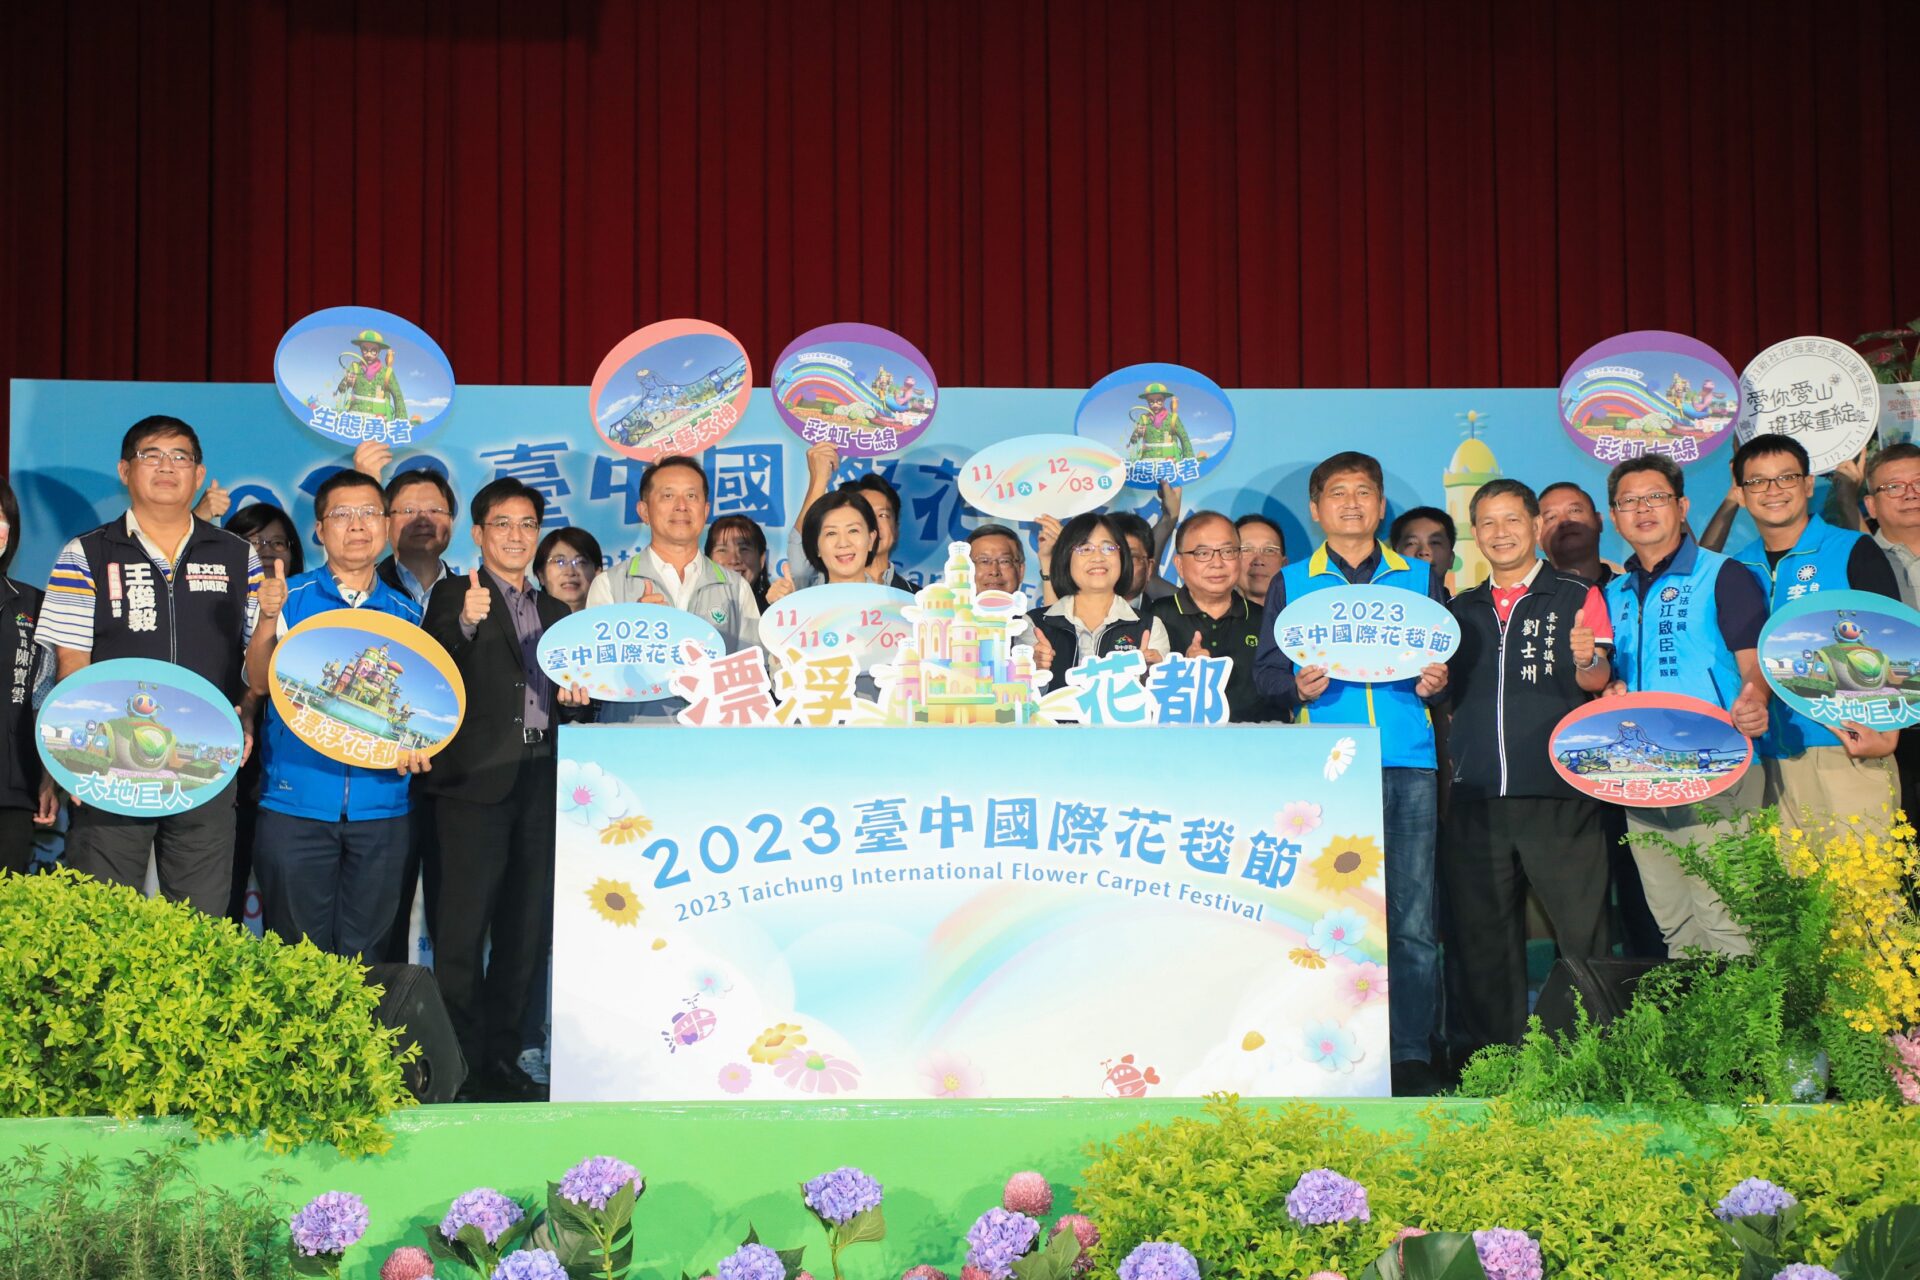 睽違兩年合體新社花海！台中國際花毯節11/11登場 打造5樓高「浮空」花卉城堡